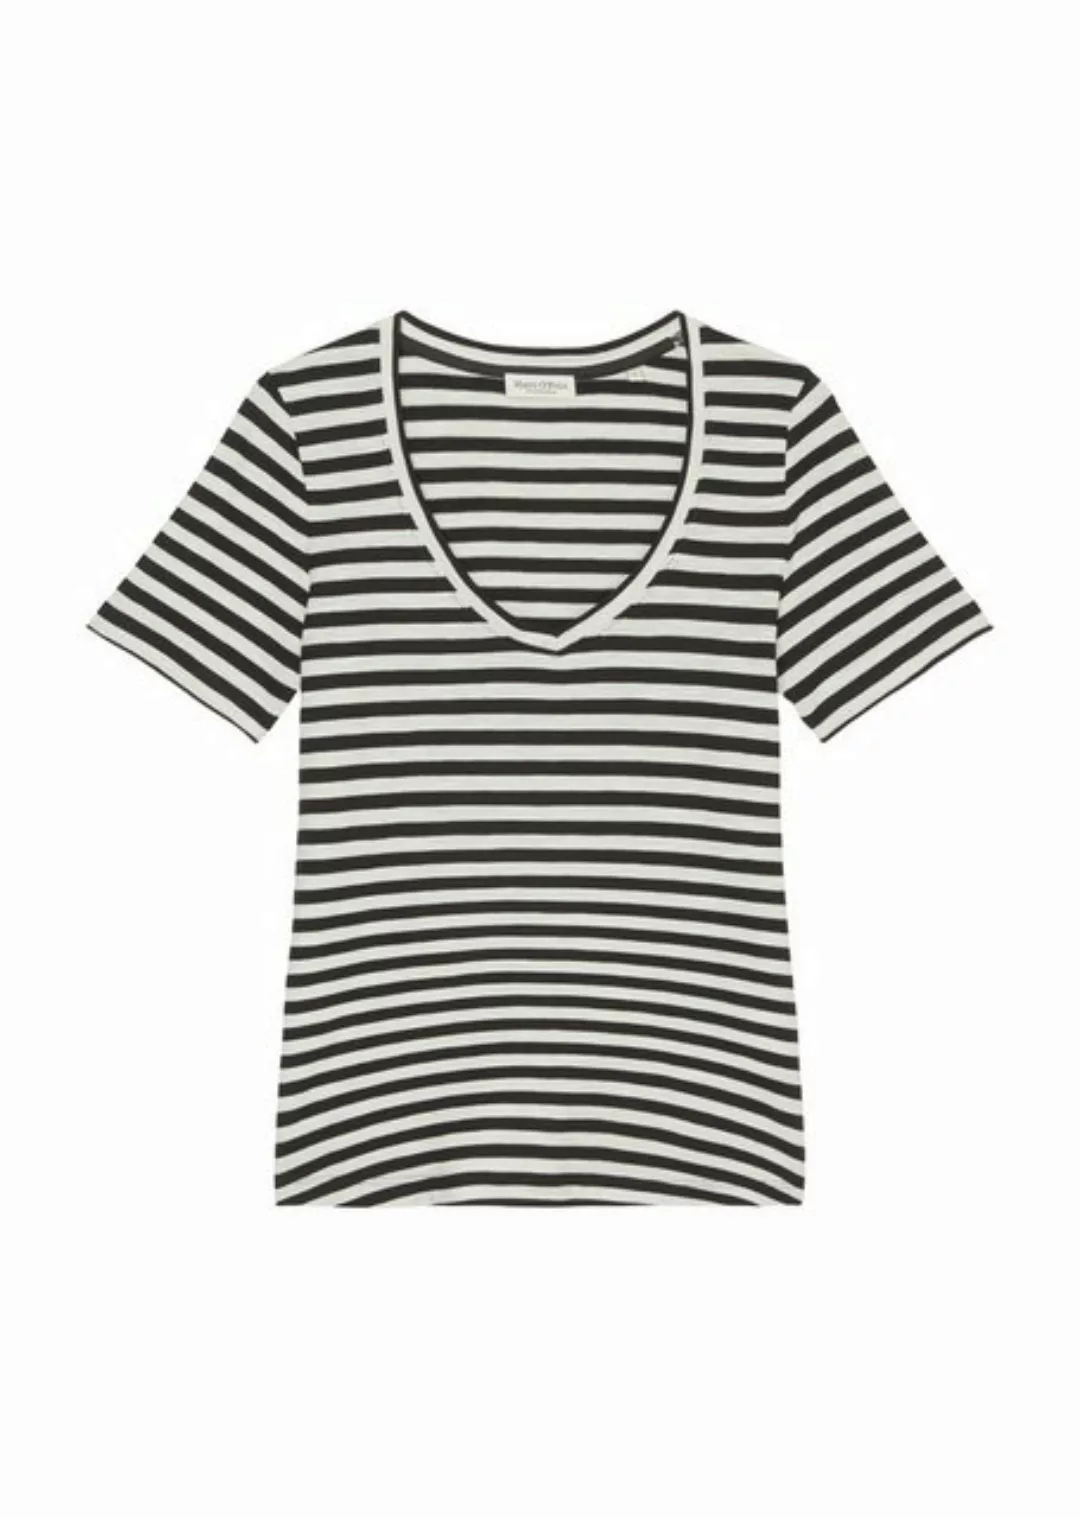 Marc OPolo T-Shirt günstig online kaufen